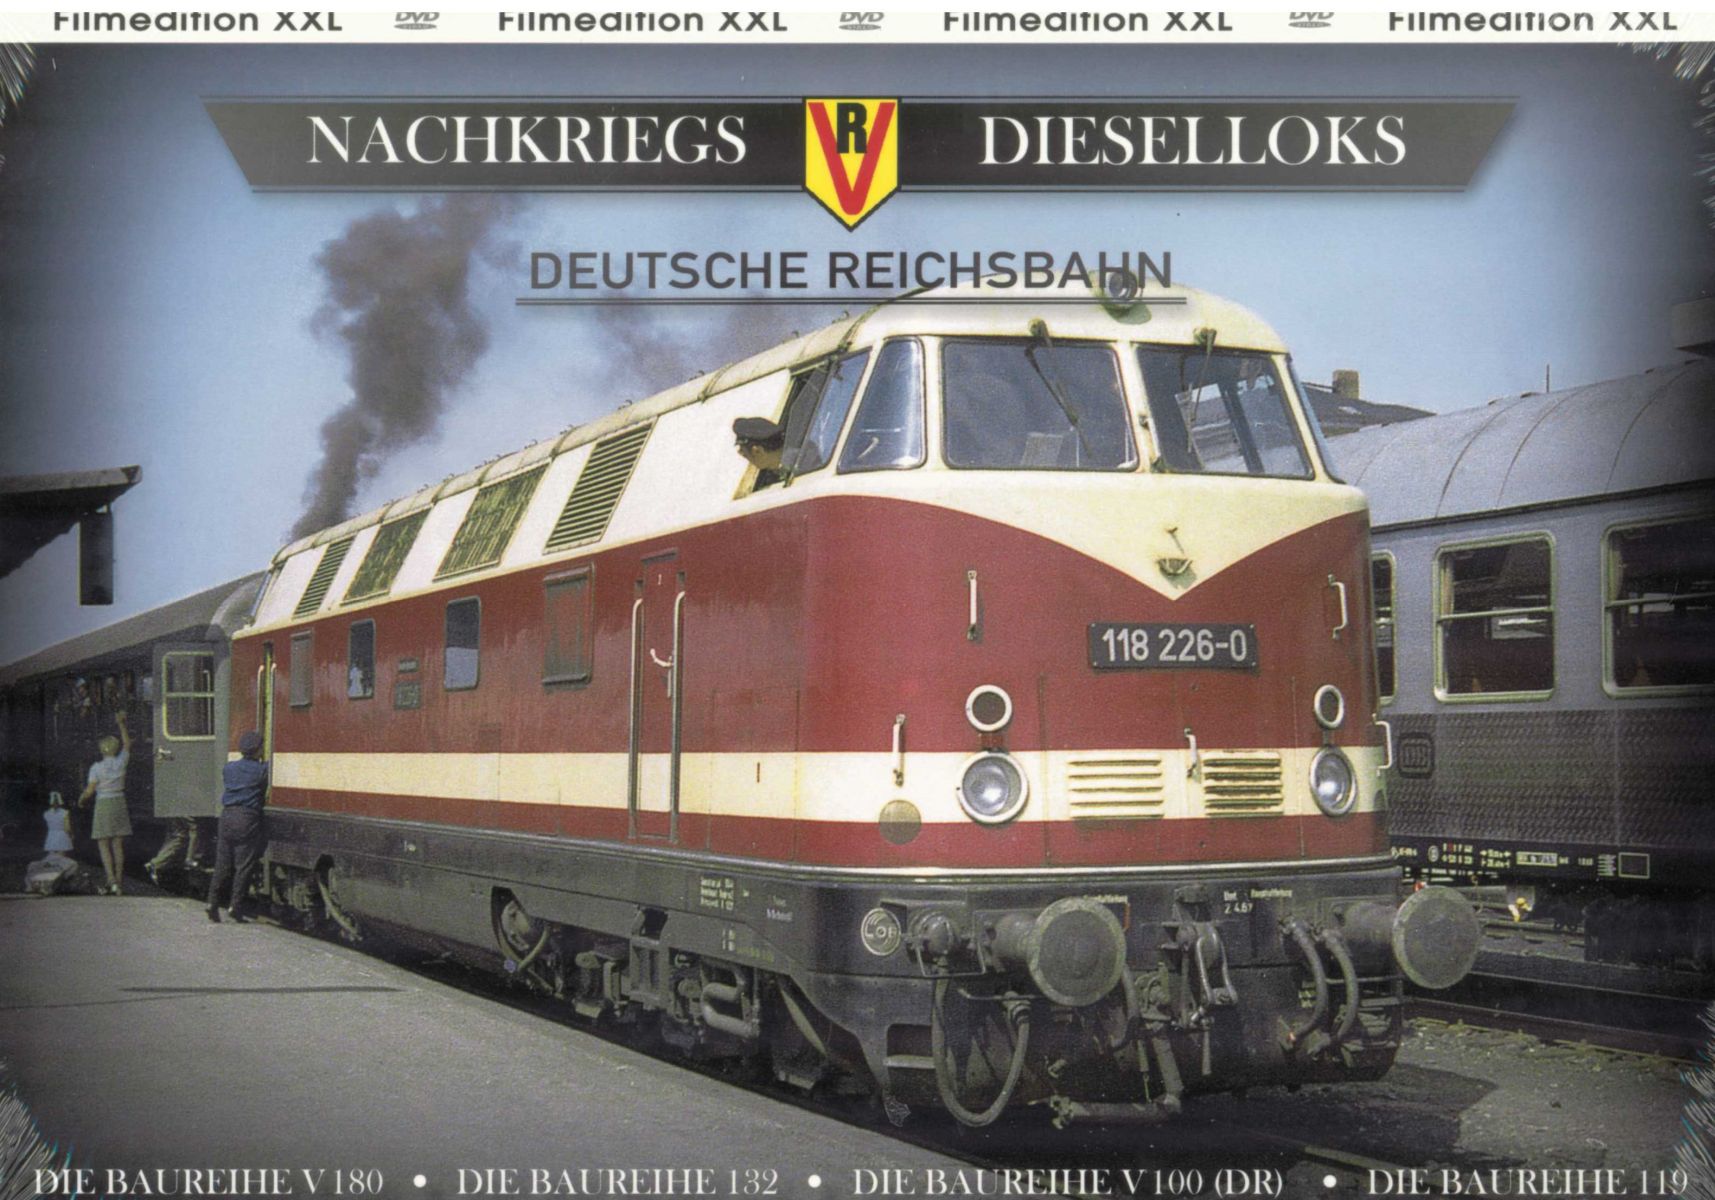 VGB 5105 - DVD - Nachkriegs-Dieselloks der DR - Sonderedition mit 4 DVDs